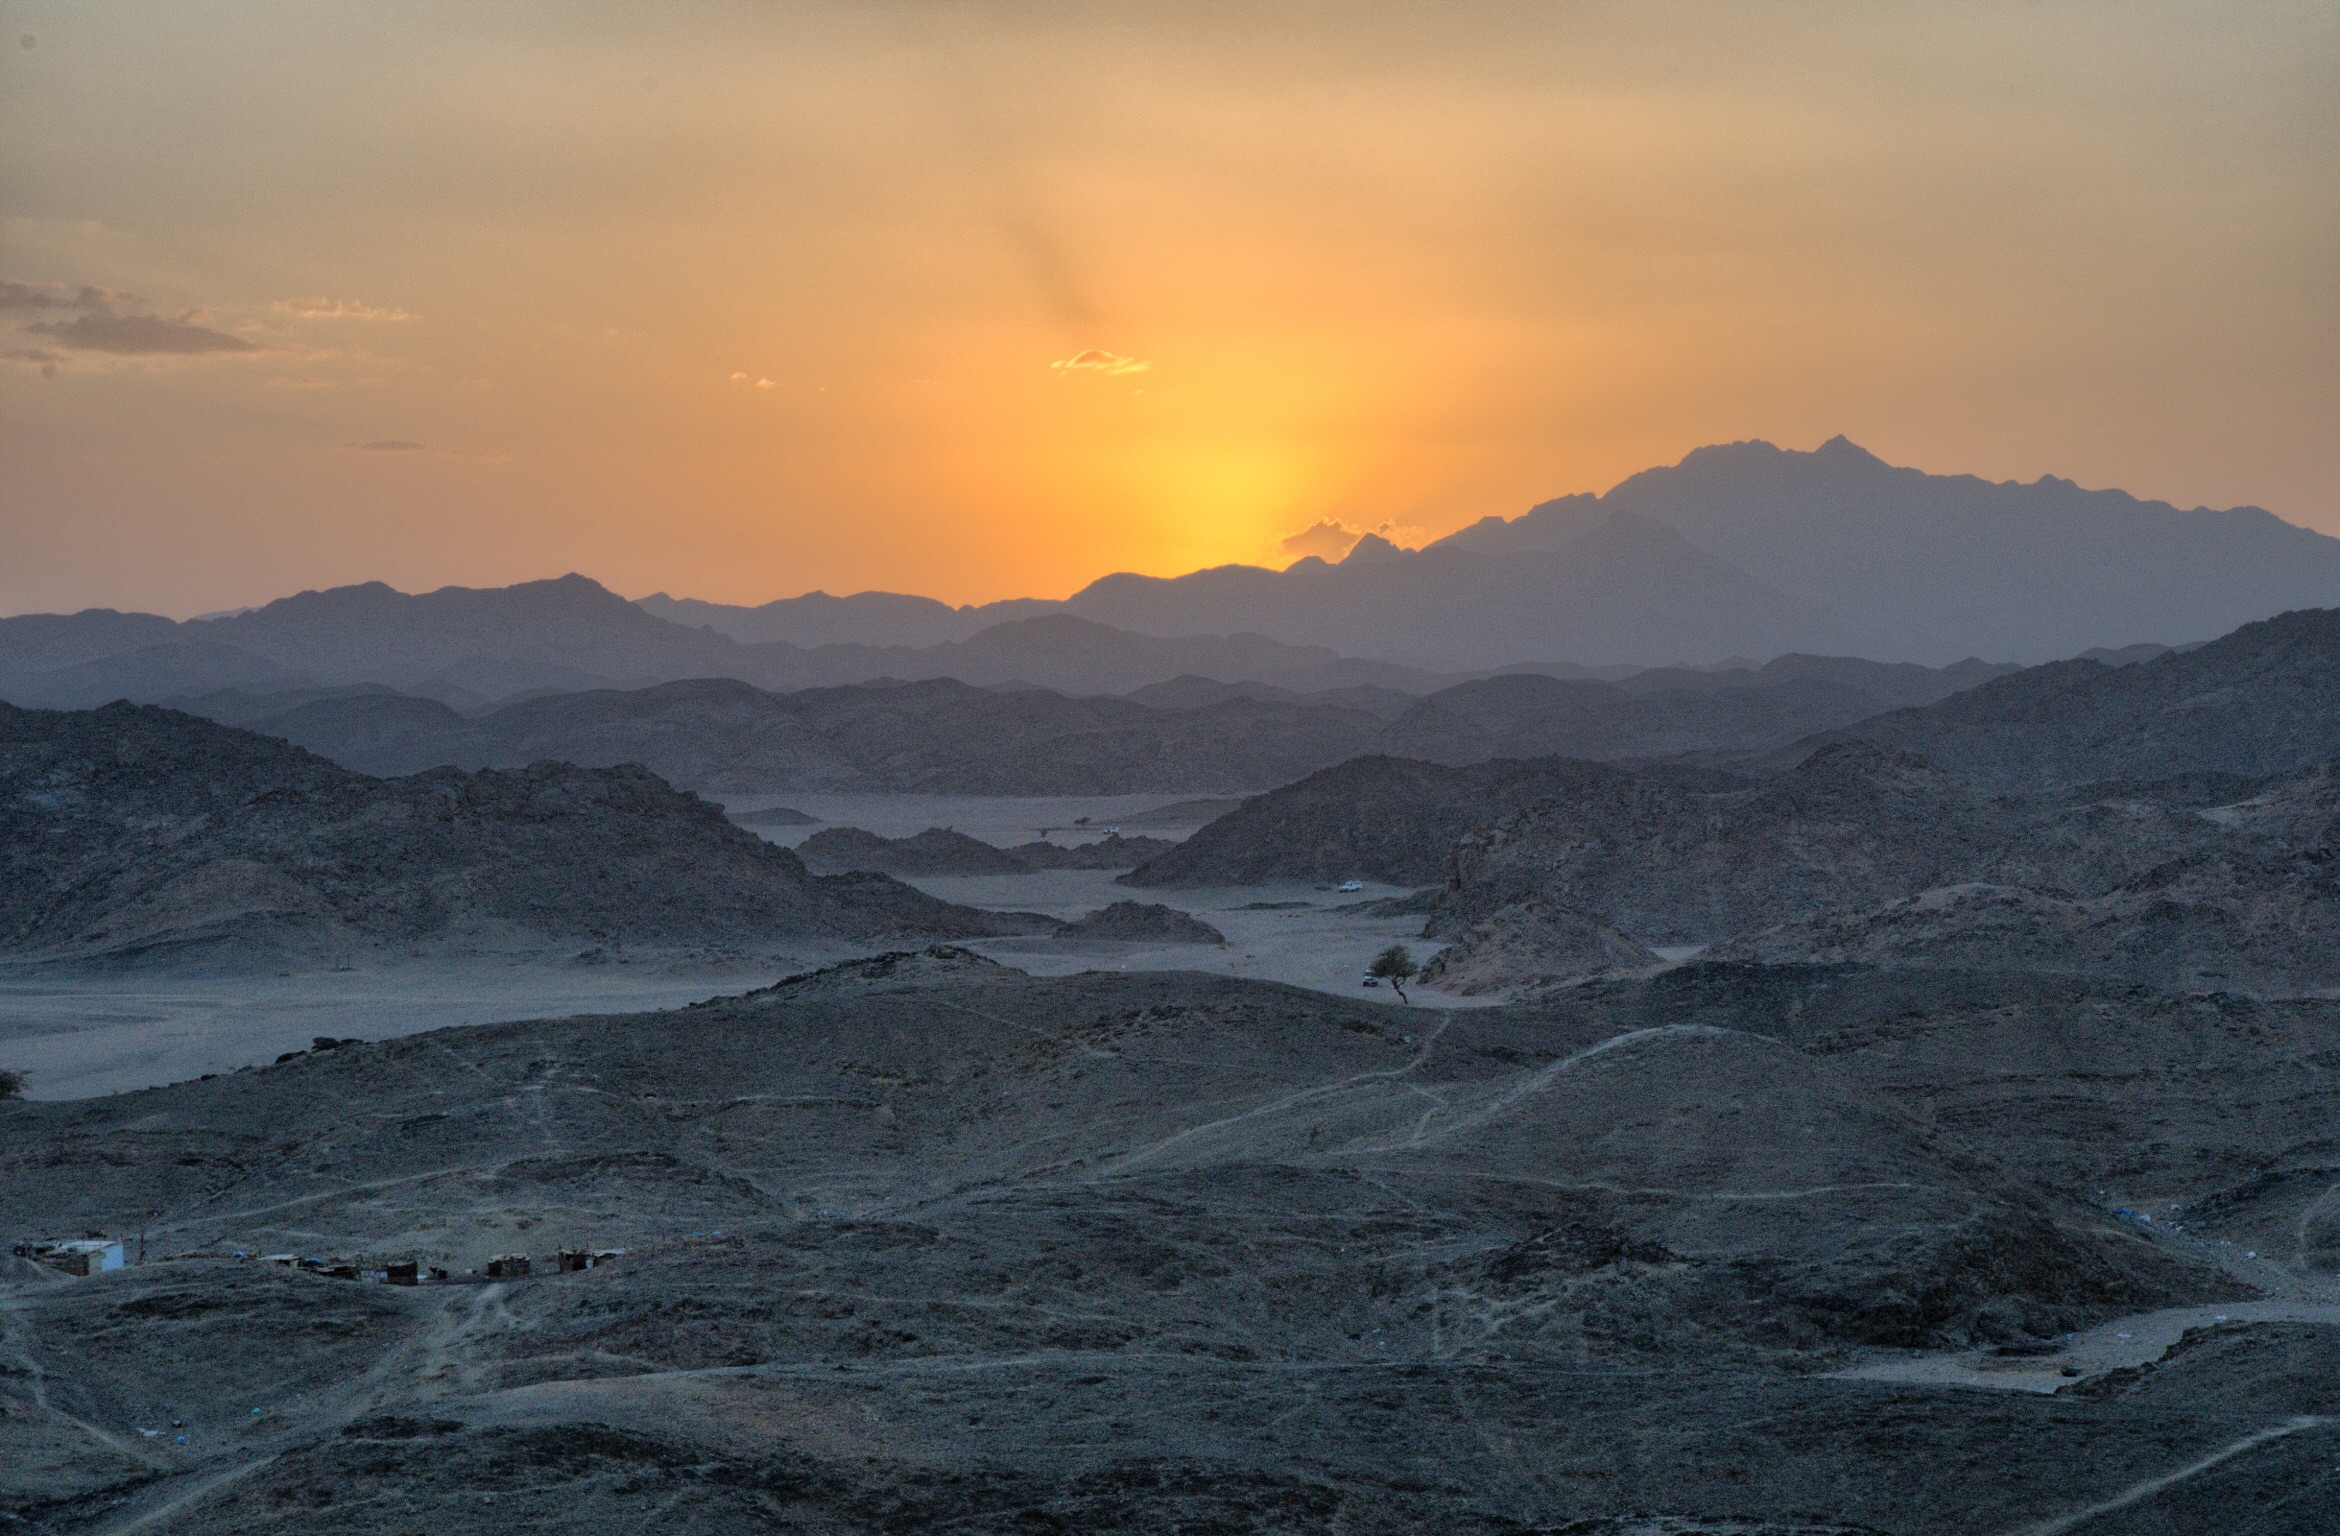 Desert of Marsa Alam...